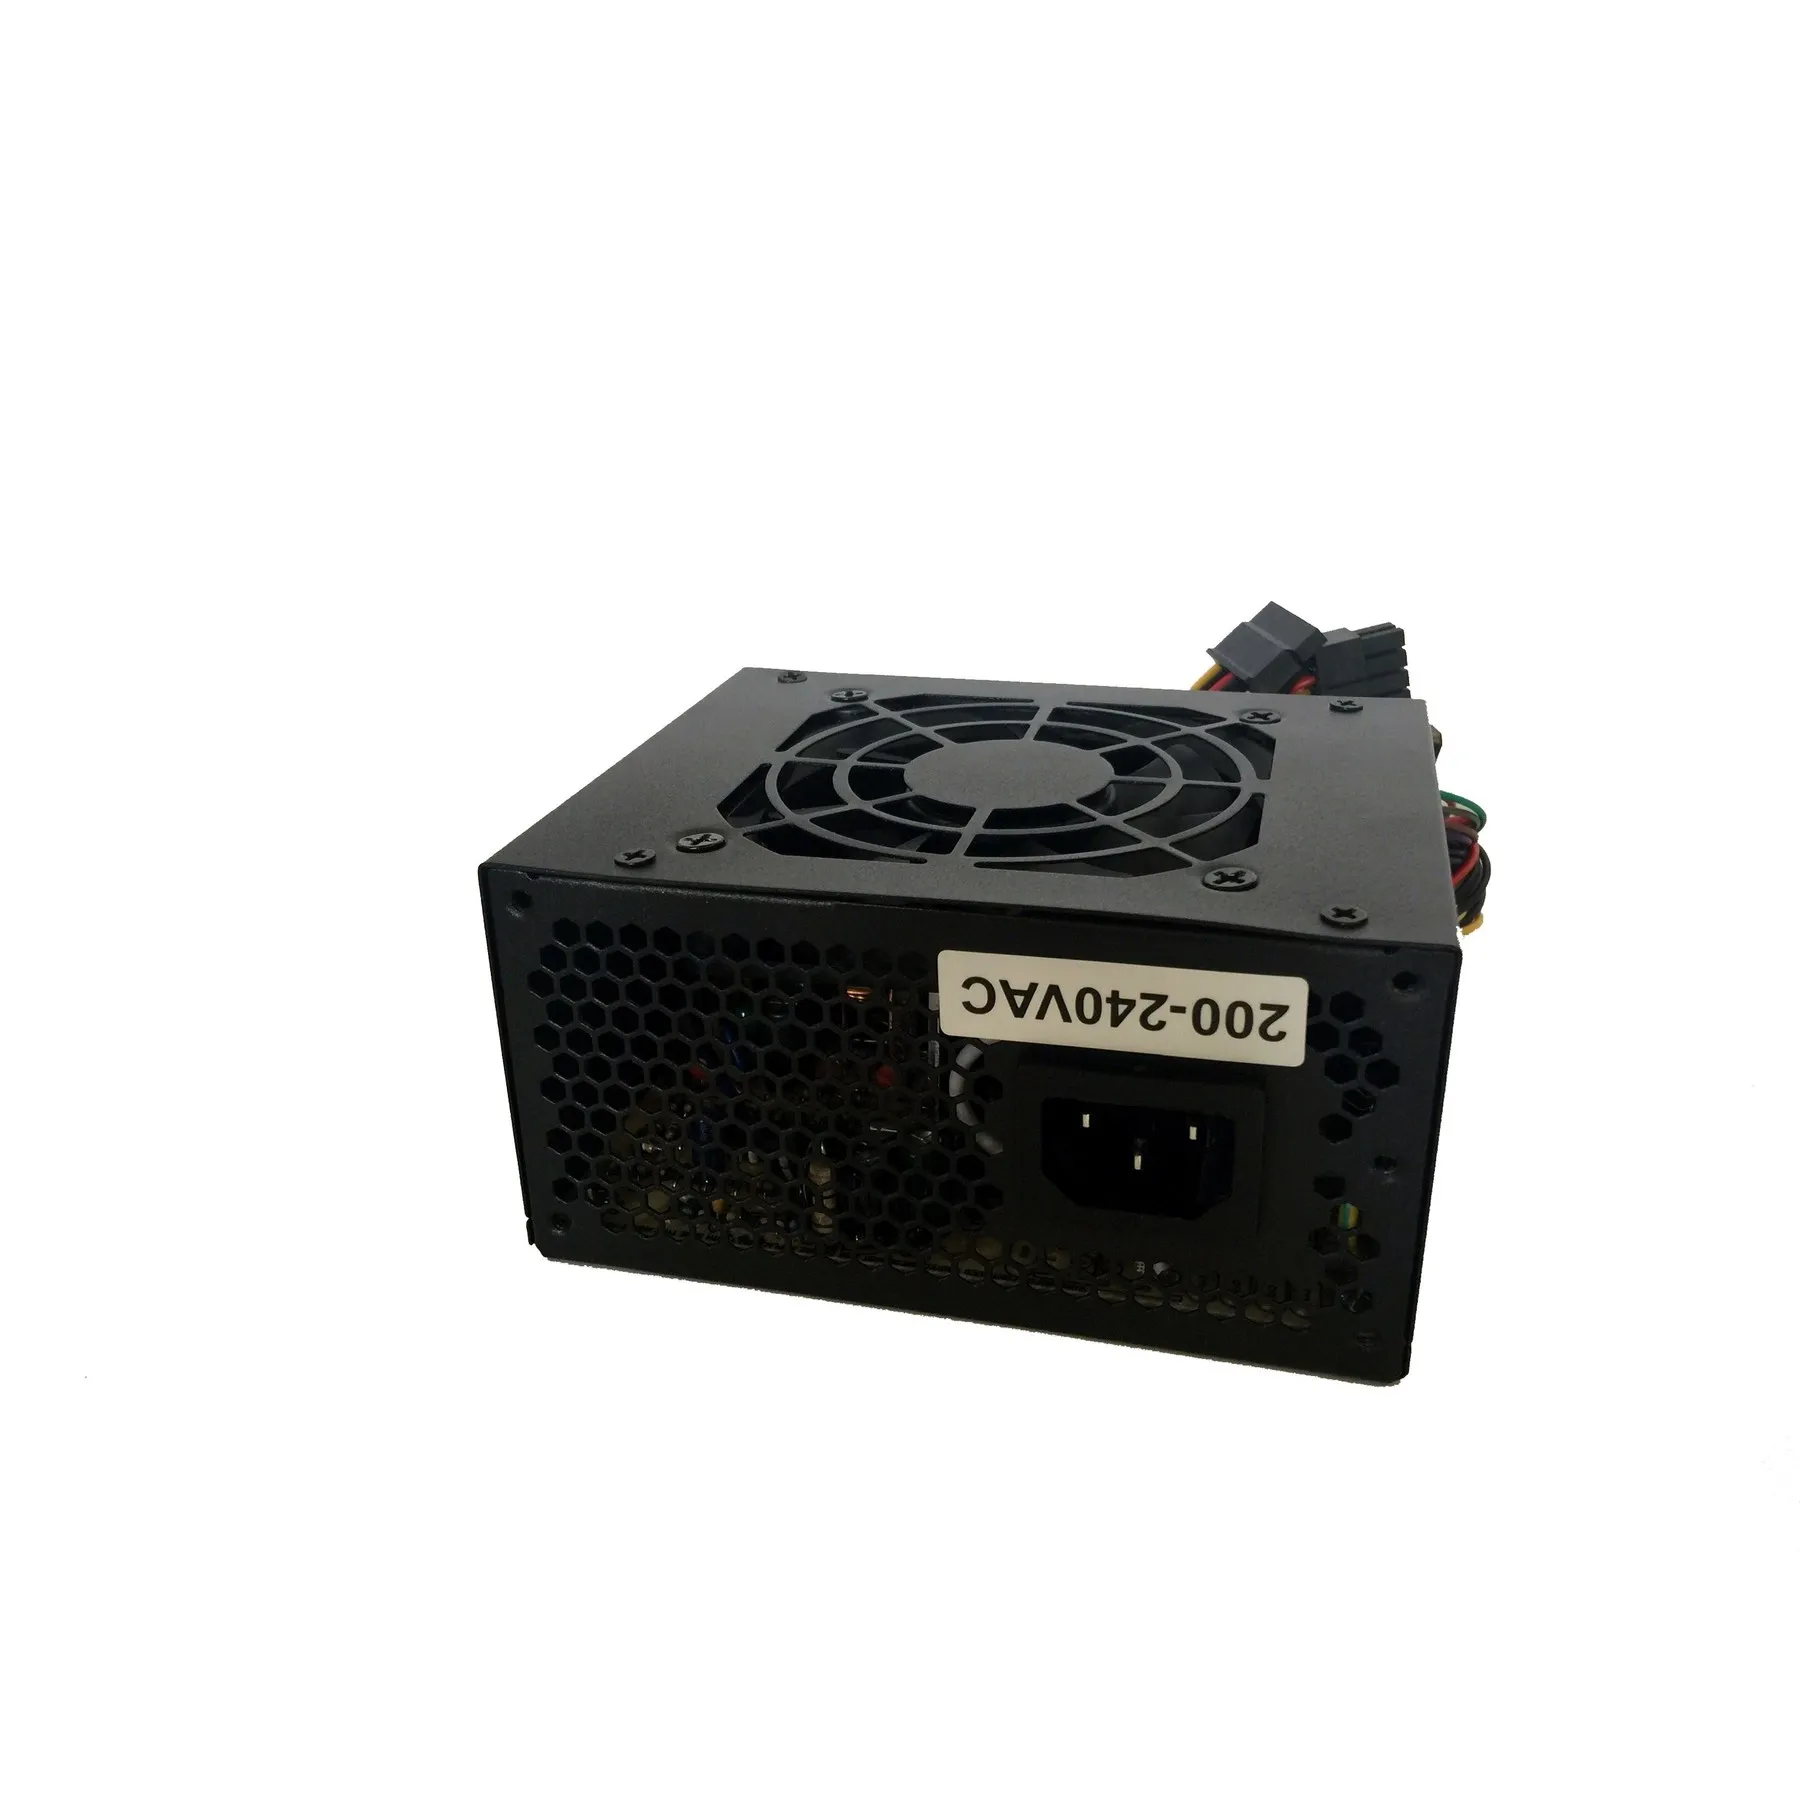 Tacens Anima APSII500, PC, putere 500 W, 12 V, ventilator de 8 cm, anti-vibrații 4